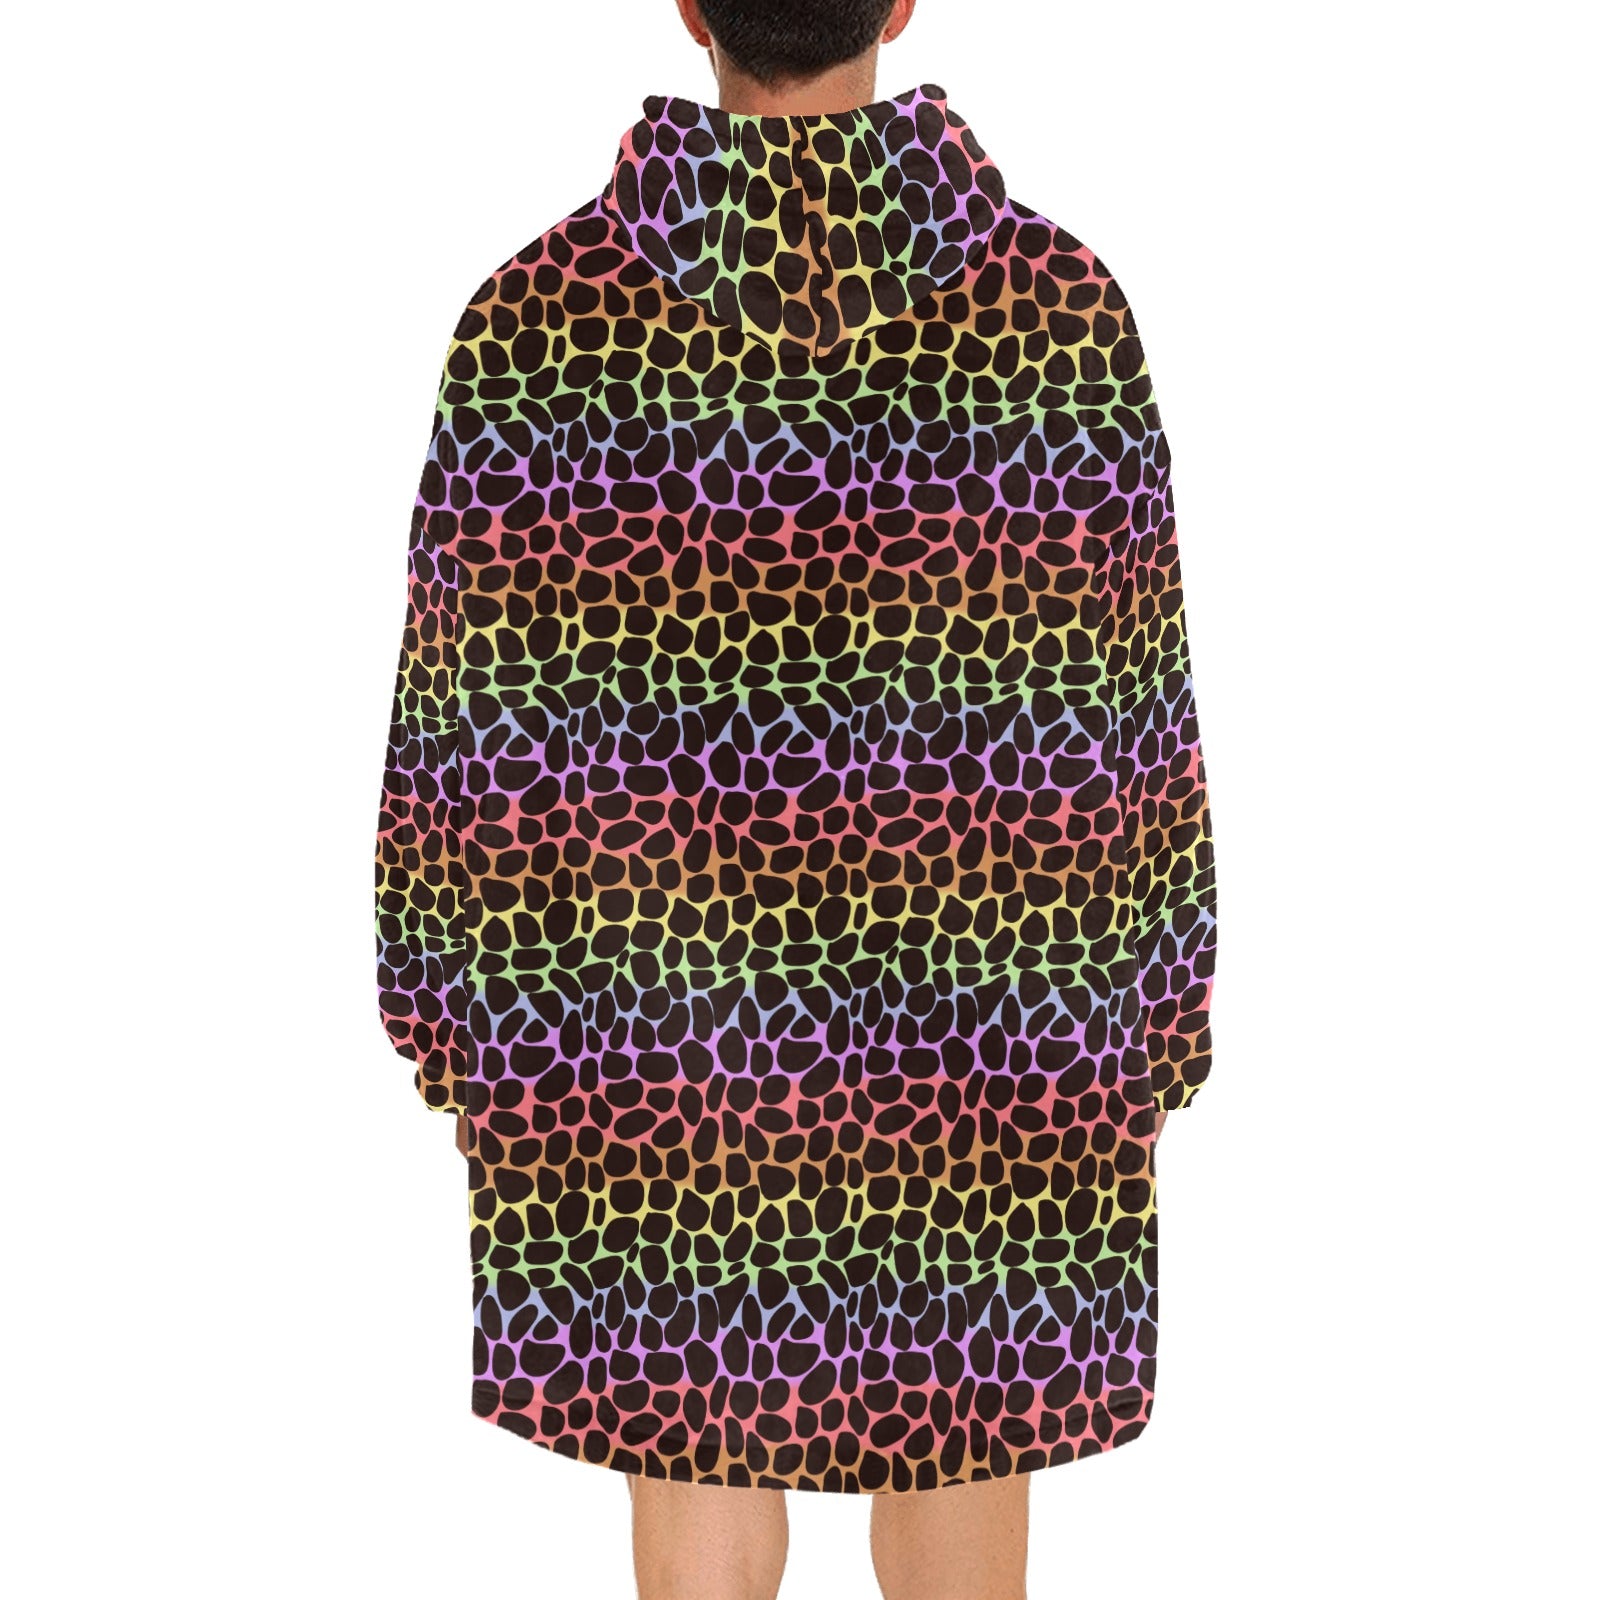 Rainbow Animal Print Cozy Hooded winter blanket OOdie